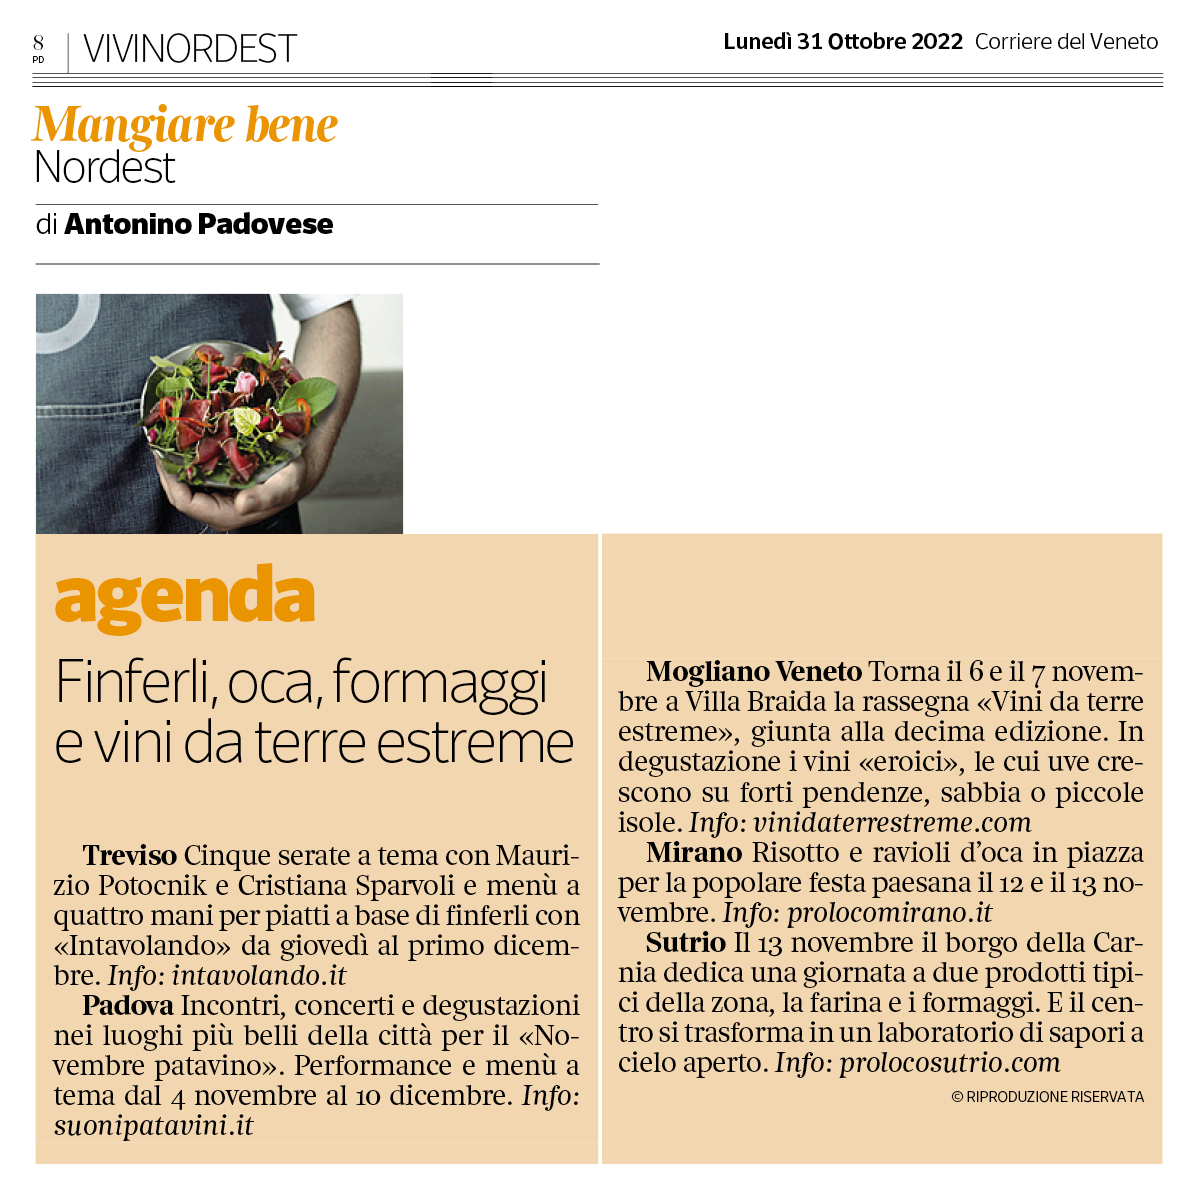 Copertina pagina del Corriere del Veneto